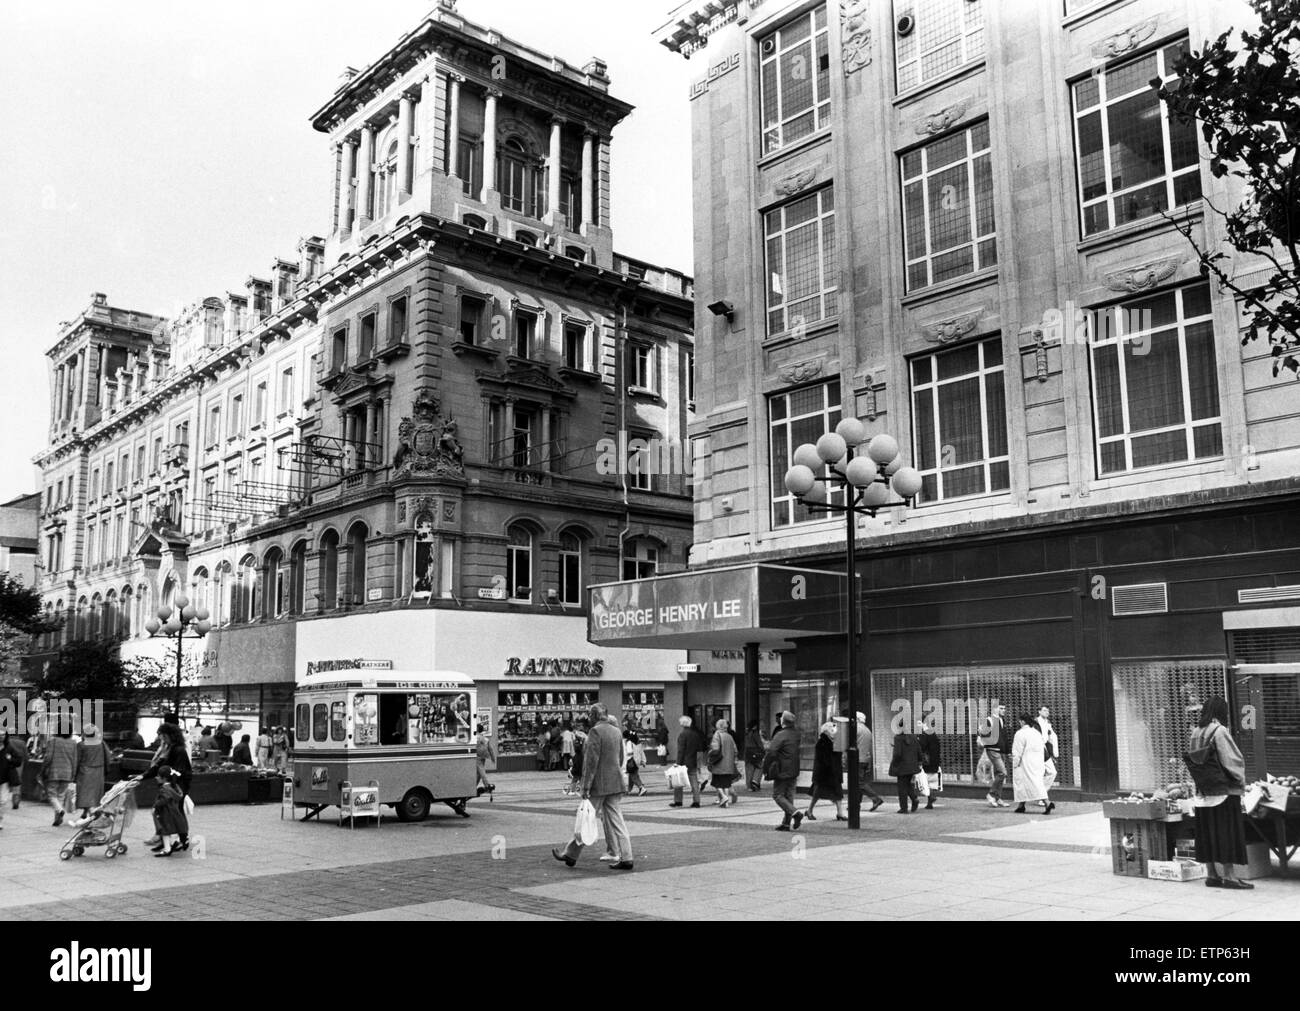 George Henry Lee's building dans la rue de l'Église. Marks and Spencer occupe le bloc suivant. La rue de l'église est l'un des quartiers commerçants de Liverpool. Church Street, Liverpool, Merseyside. 30 octobre 1989. Banque D'Images